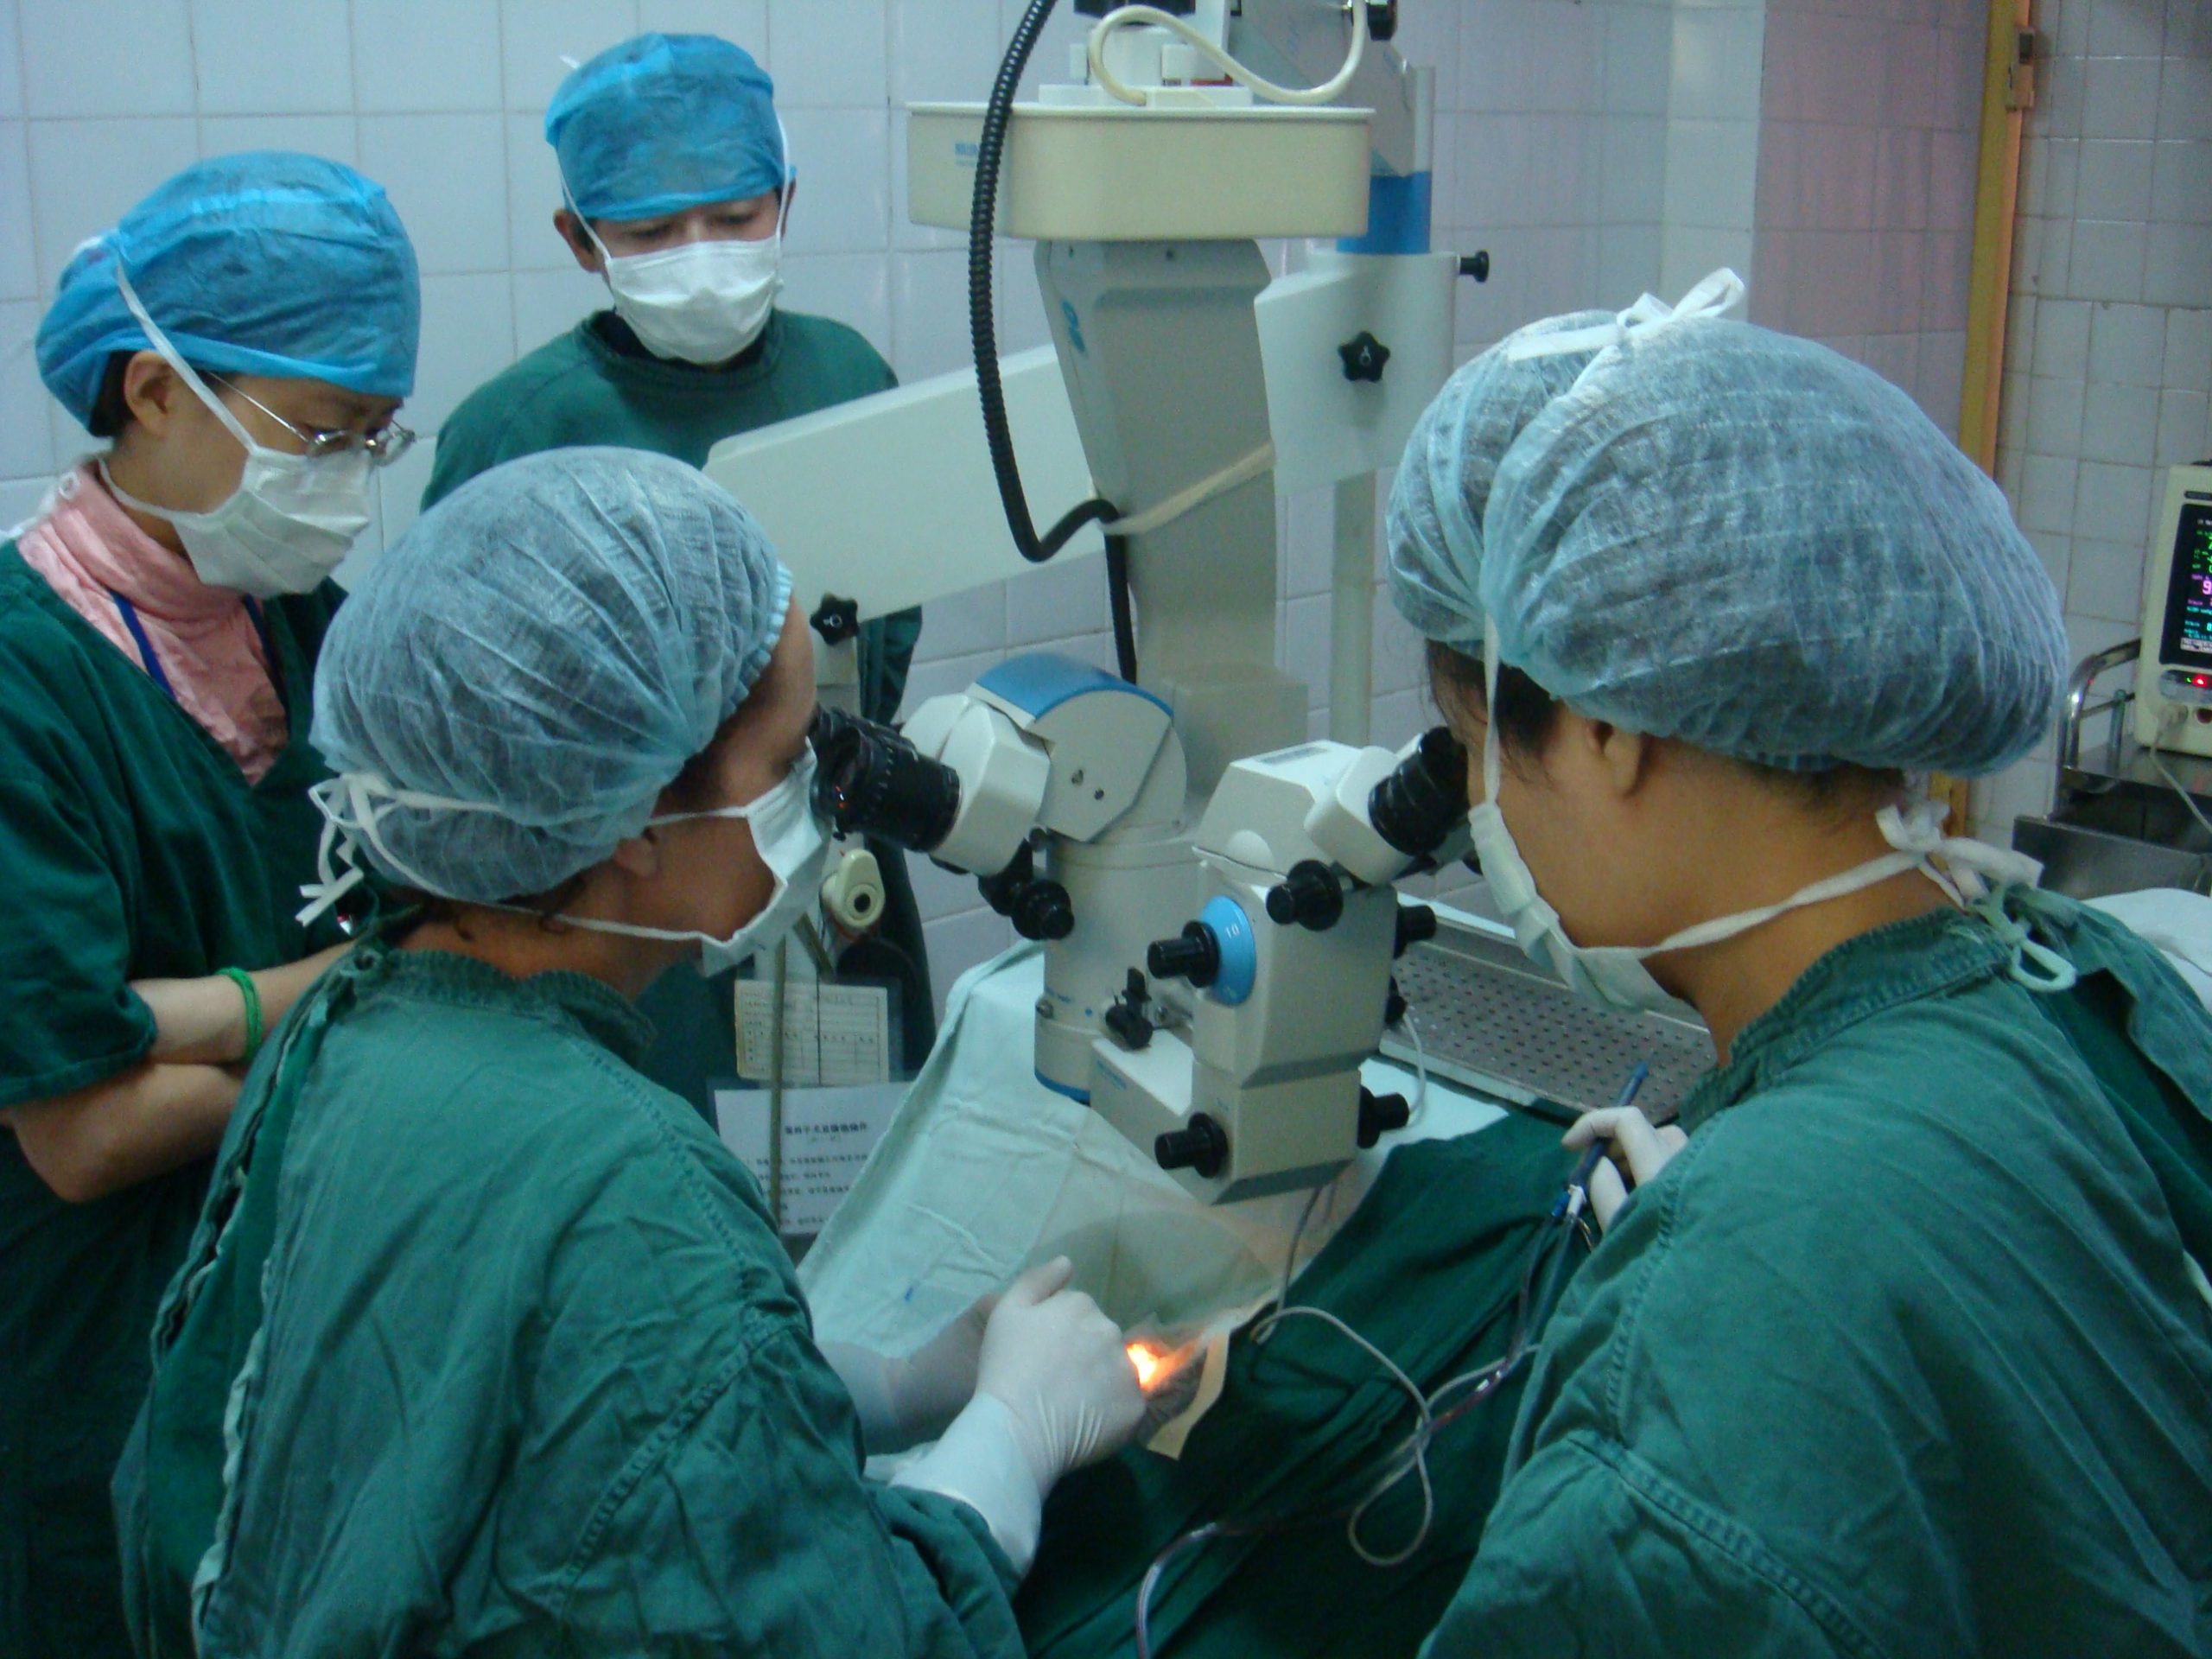 במסגרת משלחת הומניטרית לסין - ד"ר קפלן מסאס מלמדת את רופאי העיניים המקומיים